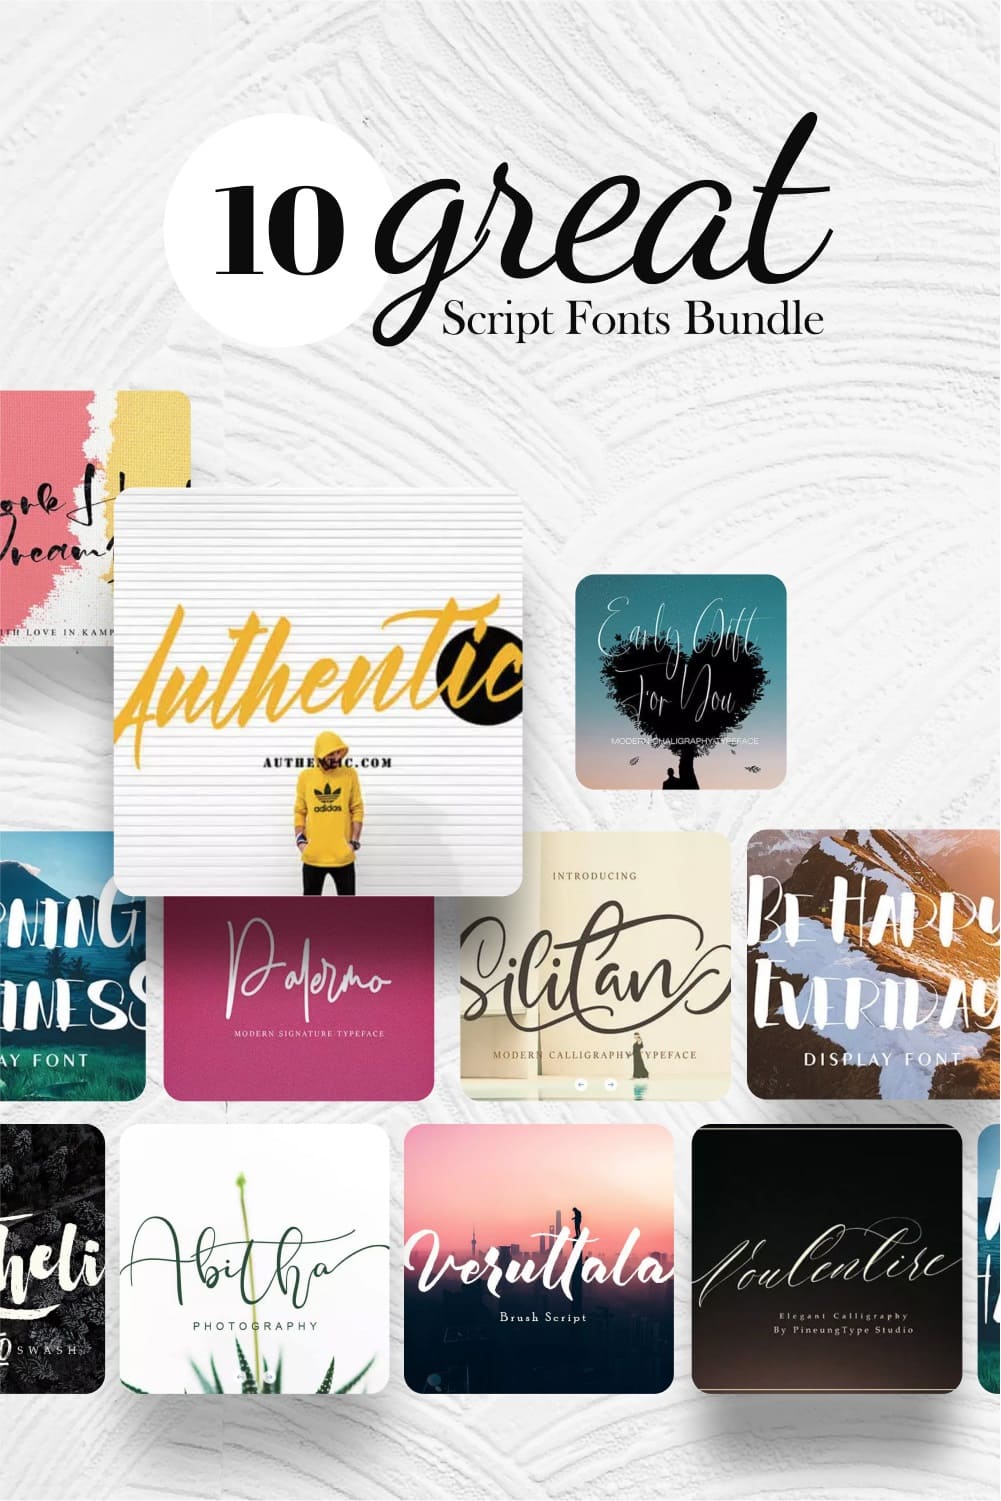 10 great script fonts bundle Pinterest collage image.